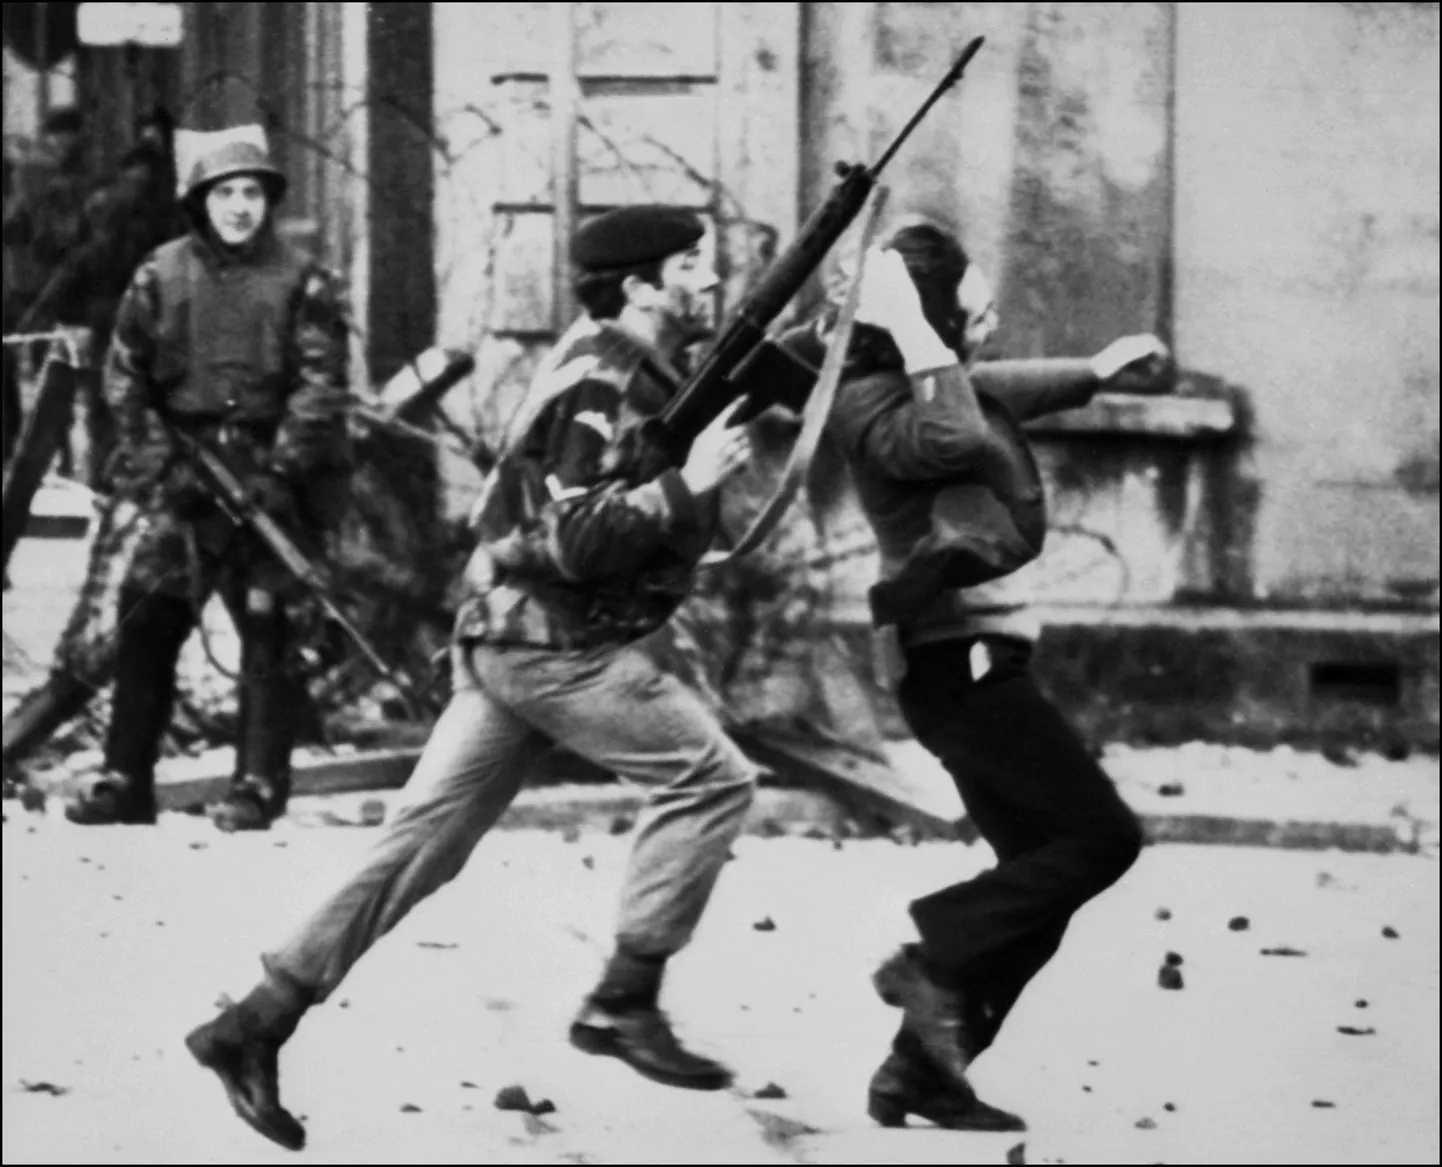 Sellel fotol, mis on tehtud 30. jaanuaril 1972, tiris Briti sõdur katoliiklasest meeleavaldajat verise pühapäeva tapmiste ajal, kui Briti langevarjurid tulistasid Londonderrys maha 13 katoliiklasest kodanikuõiguste meeleavaldajat. Vahetult pärast seda teatas Iiri Vabariiklik Armee (IRA), et nende vahetu poliitika on tappa nii palju Briti sõdureid kui võimalik.